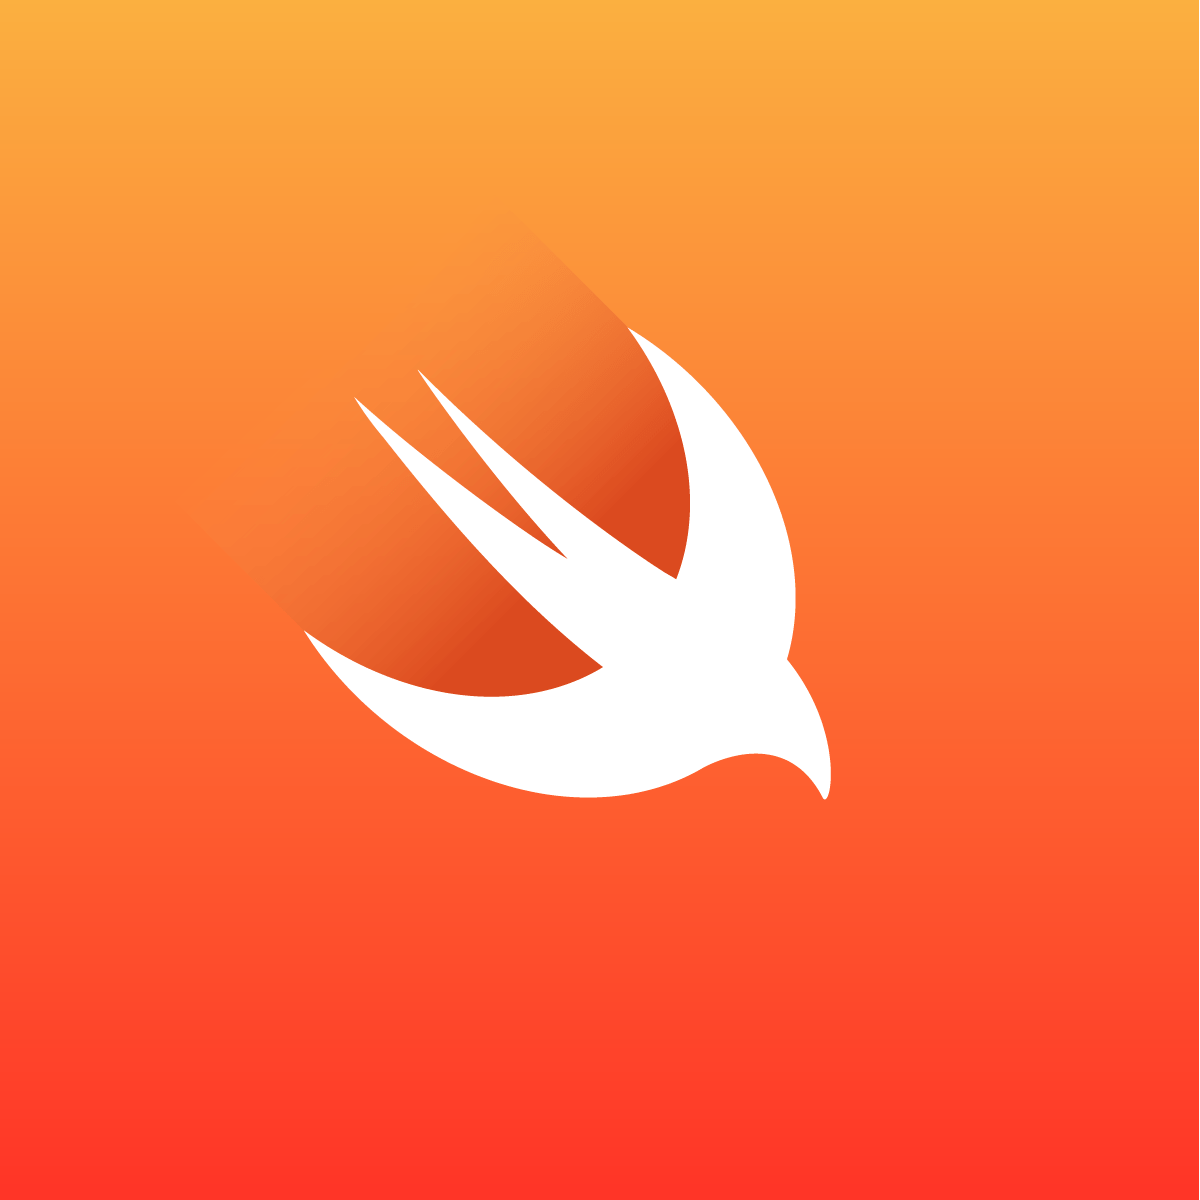 Red F Software Program Logo - Swift - Apple Developer